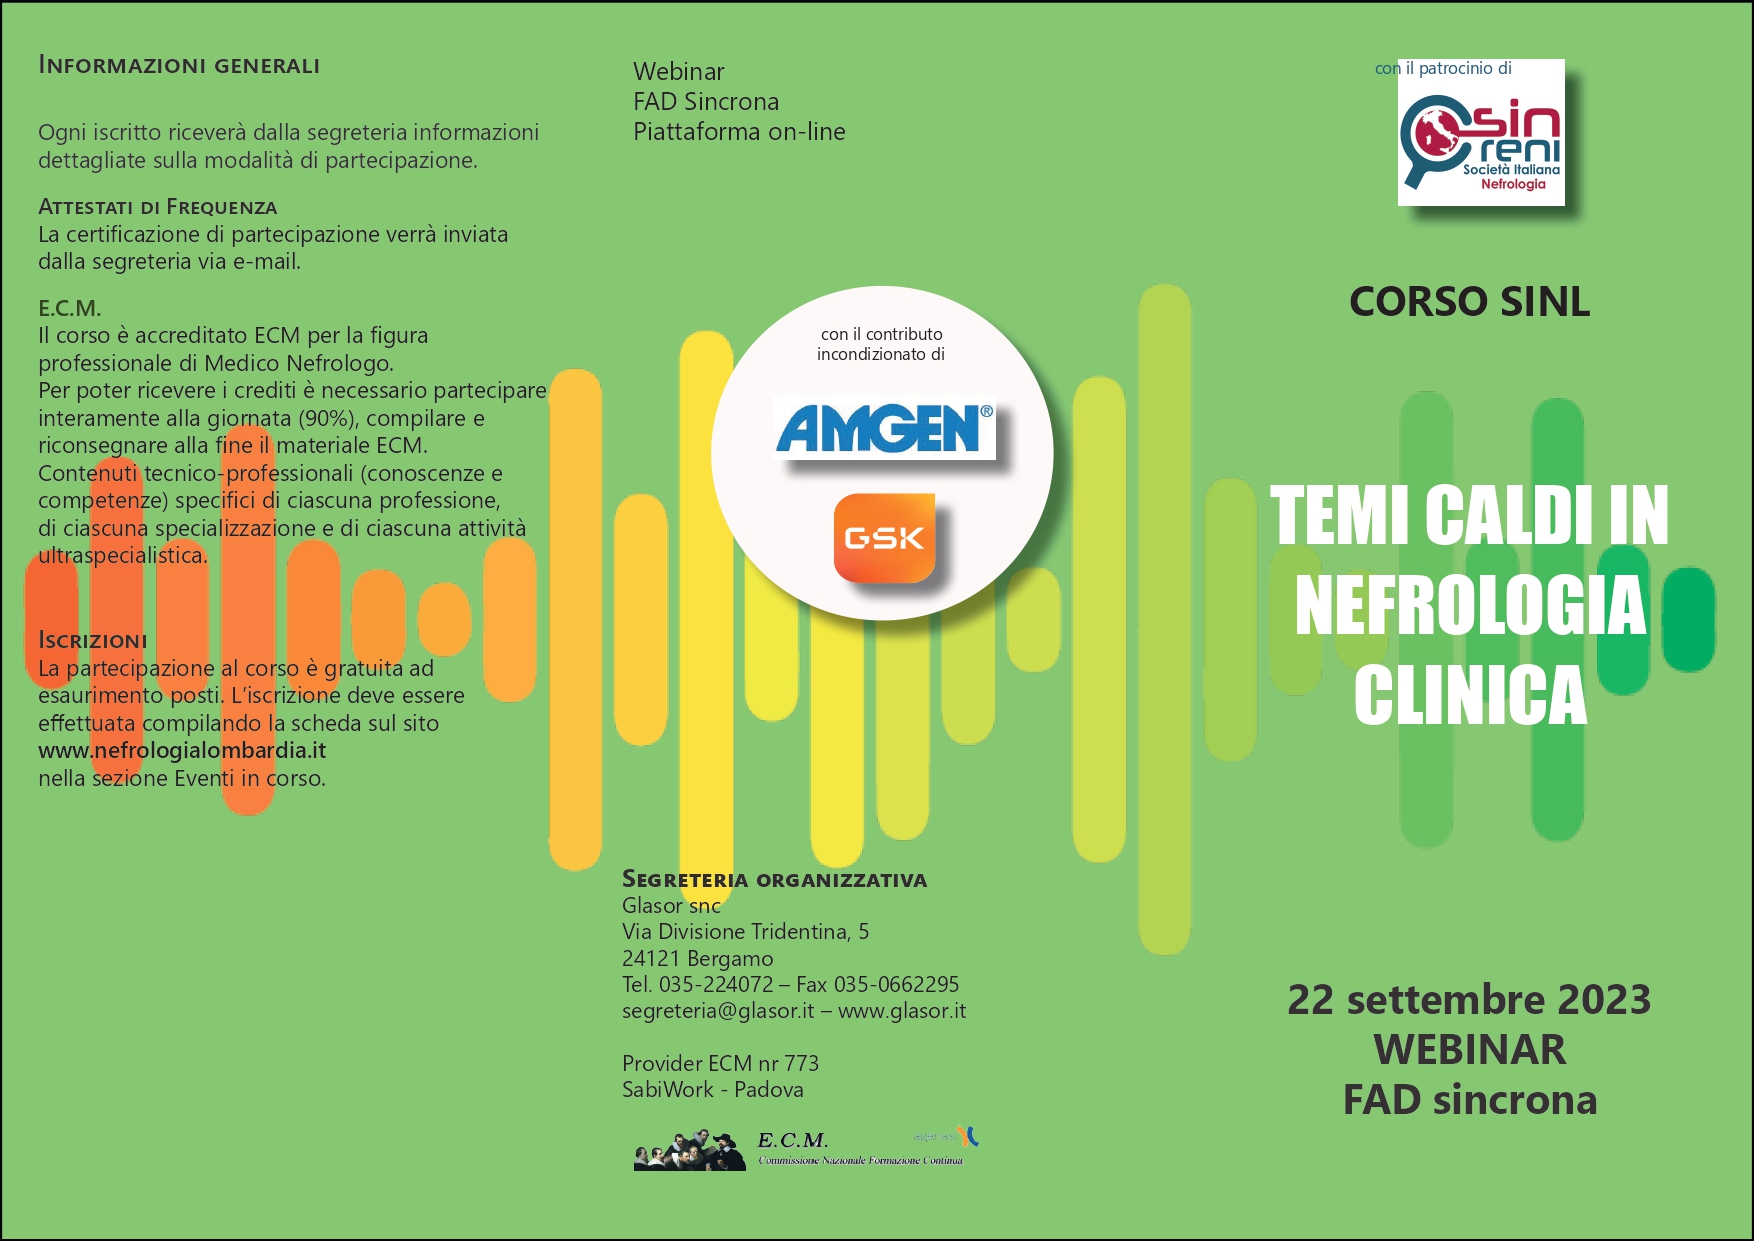 Corso SIN Lombardia: Temi caldi in Nefrologia Clinica